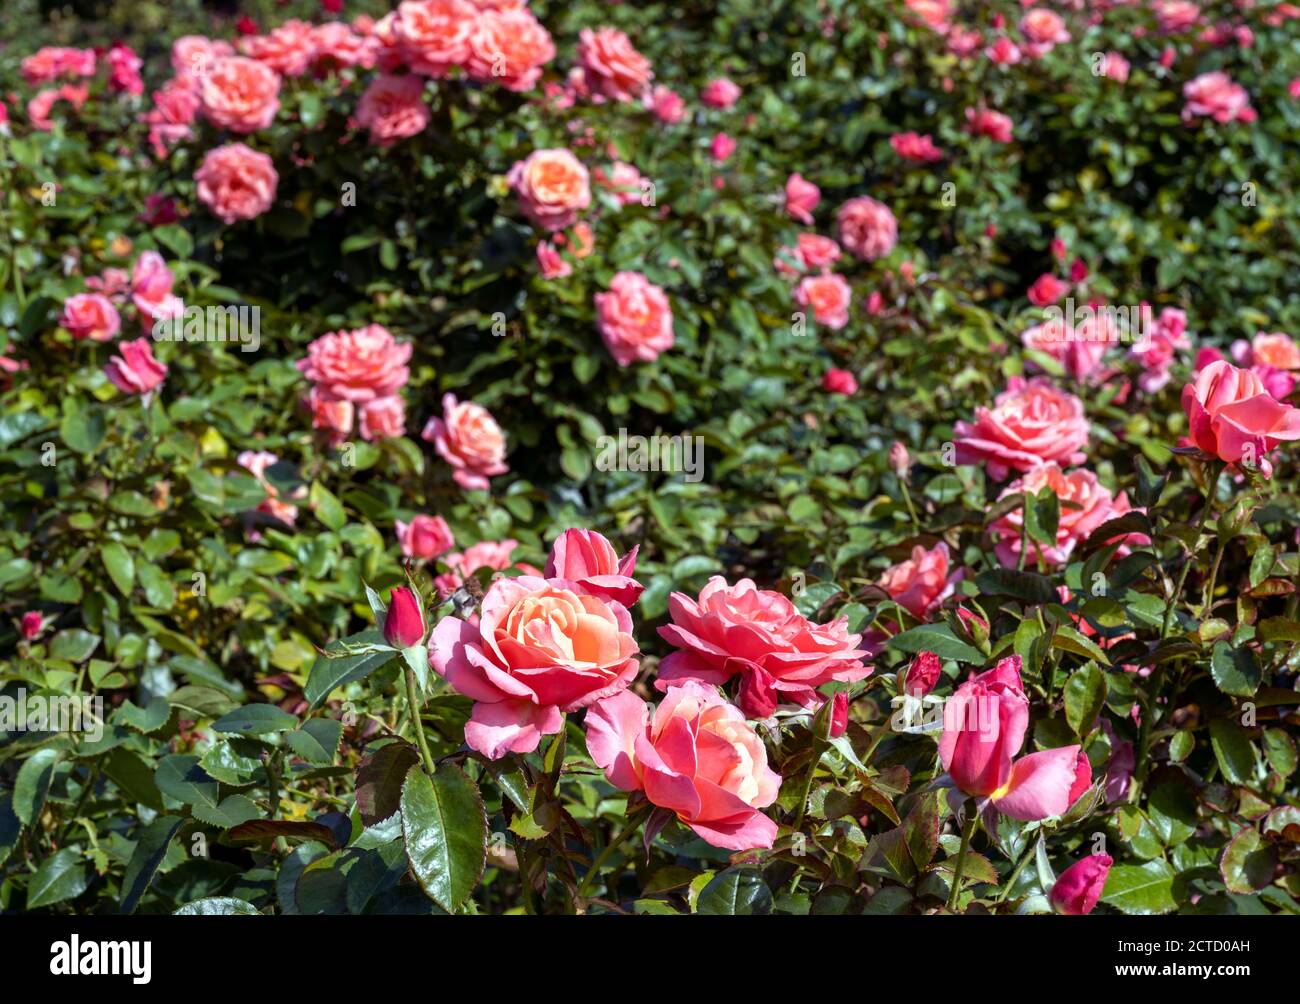 Blenheim Palace un site classé au patrimoine mondial de l'UNESCO, Woodstock, Oxfordshire, Royaume-Uni - voir les roses Rosa 'Silver Jubilee' dans le jardin de roses. Banque D'Images